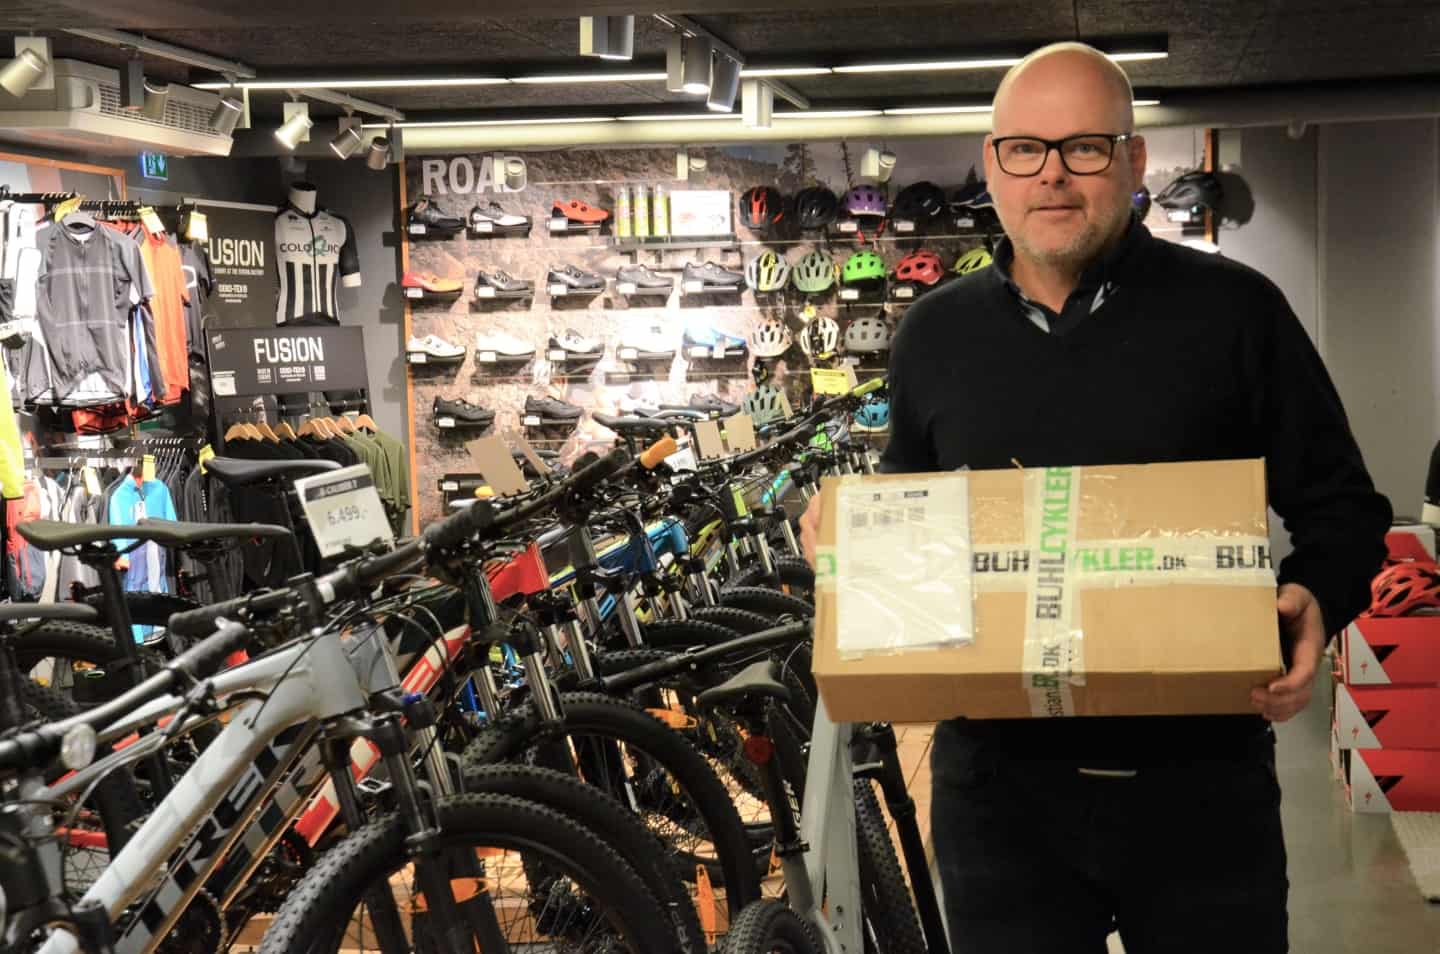 Se listen: cykelhandlere tjener mest i Aarhus - en af butikkerne har over 100 år på bagen |